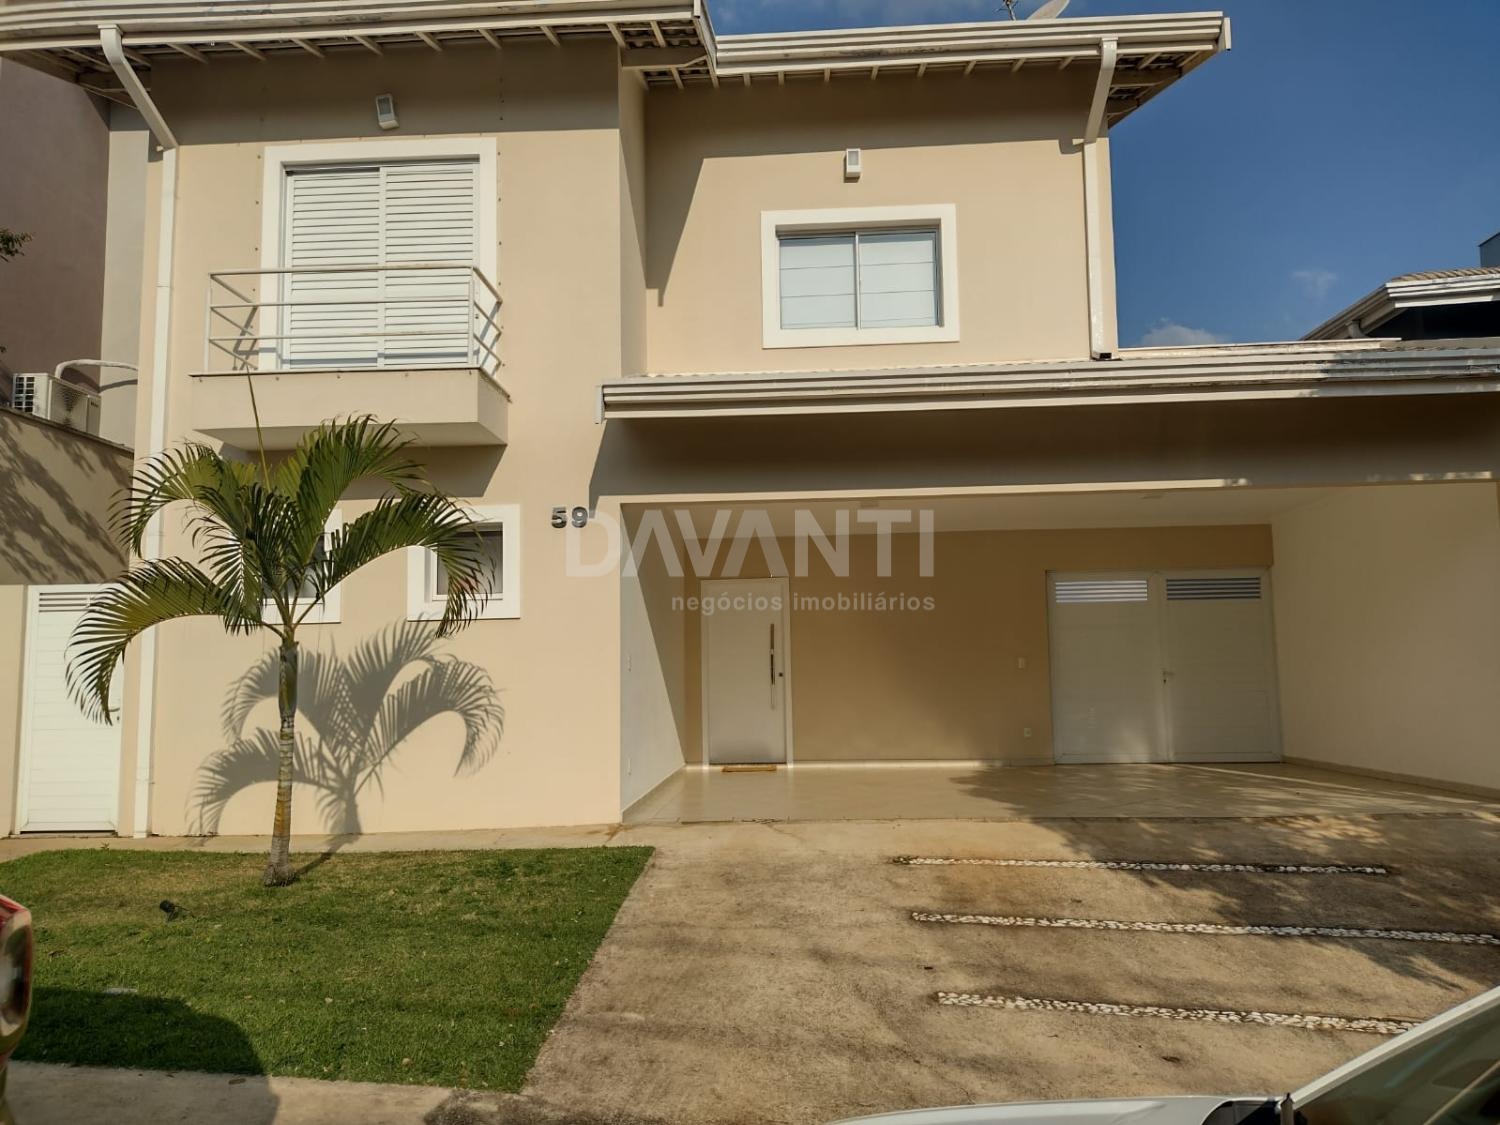 CA116902 | Casa venda Condomínio Residencial Canterville Residence | Valinhos/SP